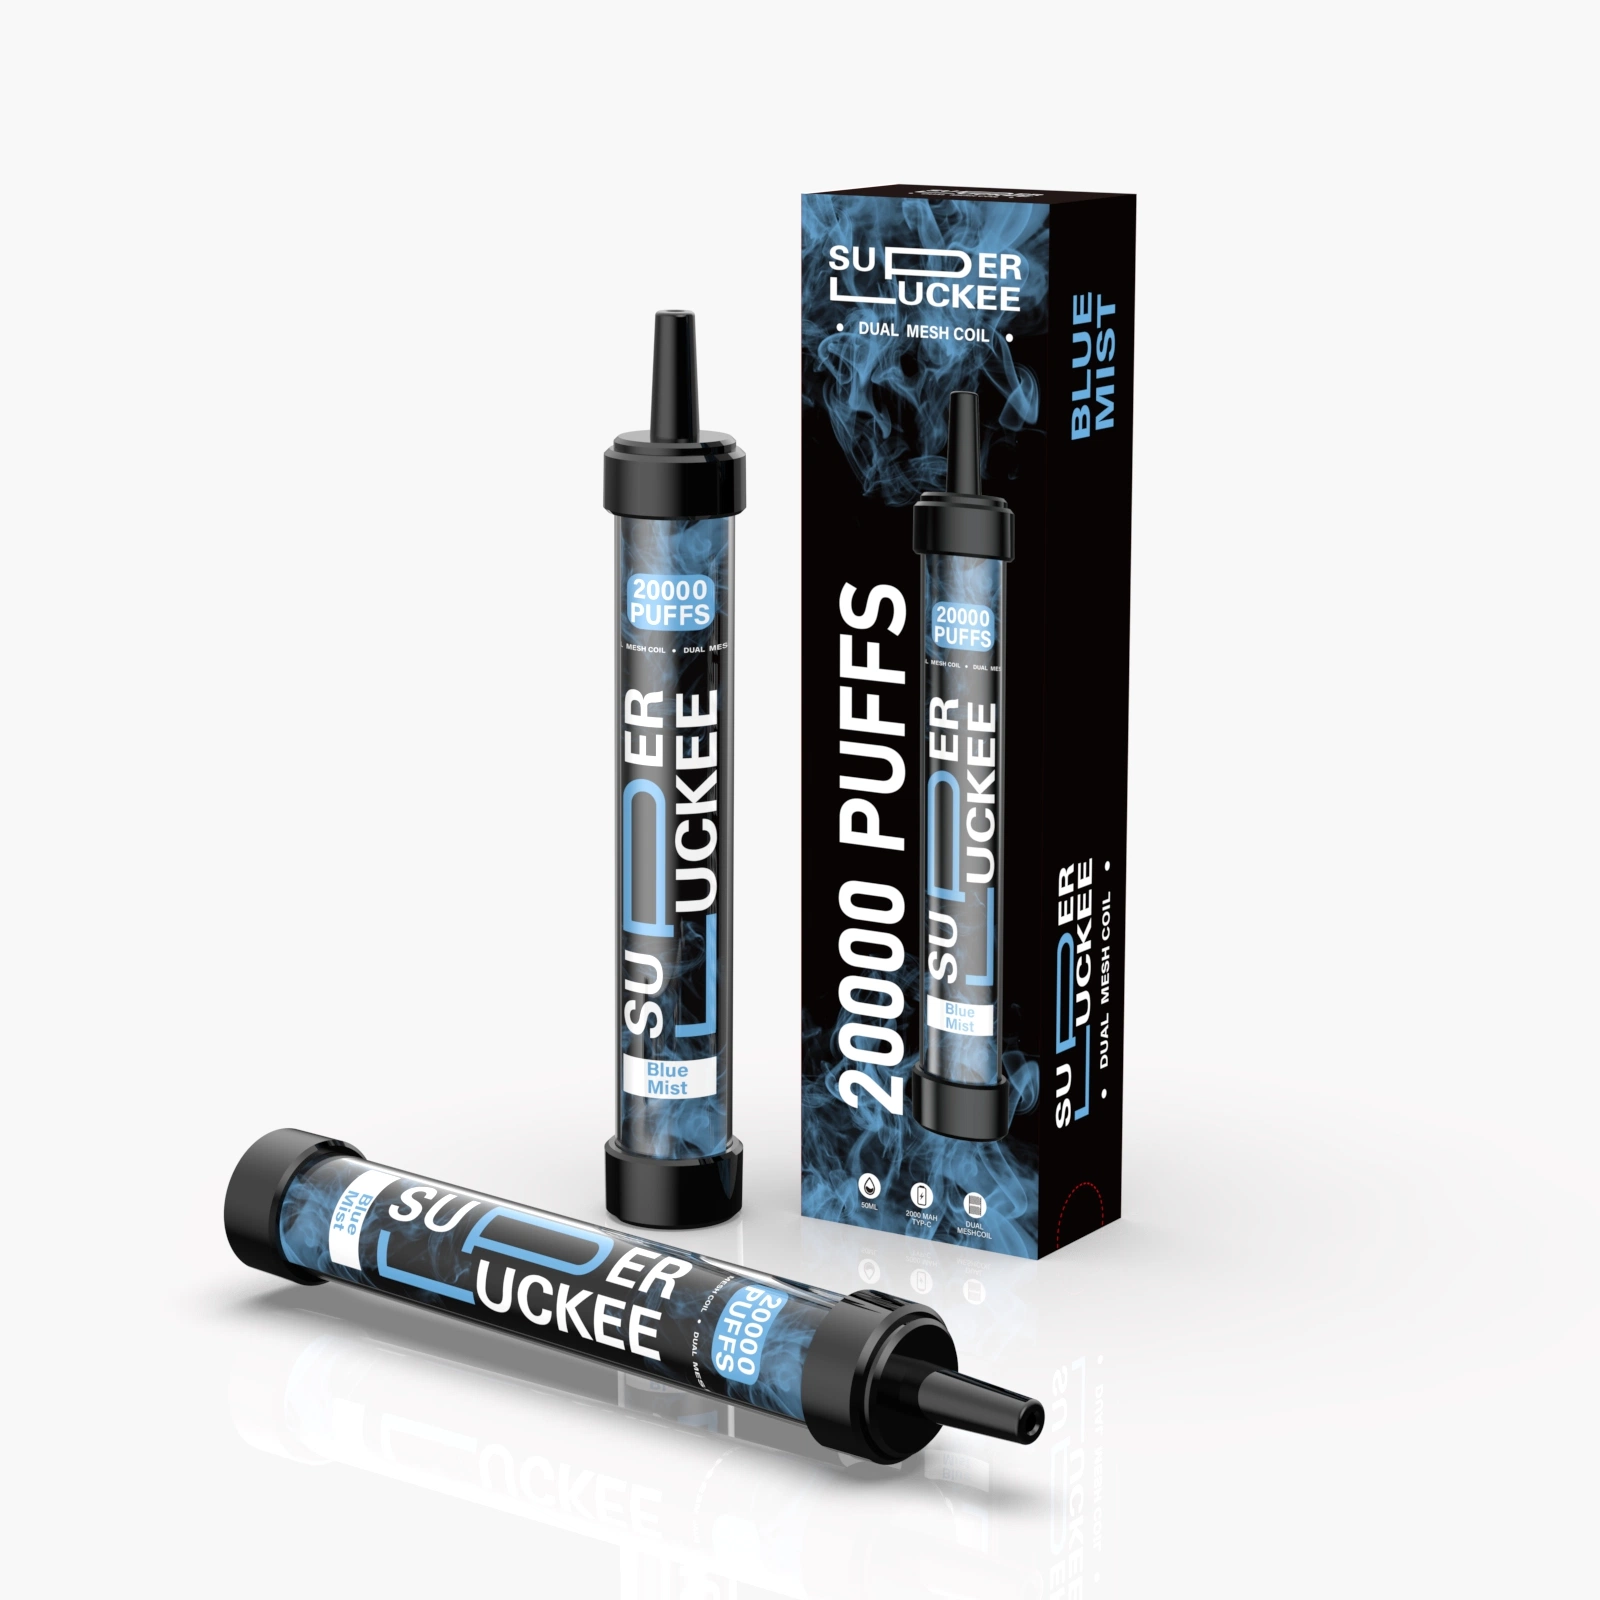 50ml Wiederaufladbare Einweg-Pod Pen Style E-Zigarette Super Luckee 20000 Puff Vaporizer